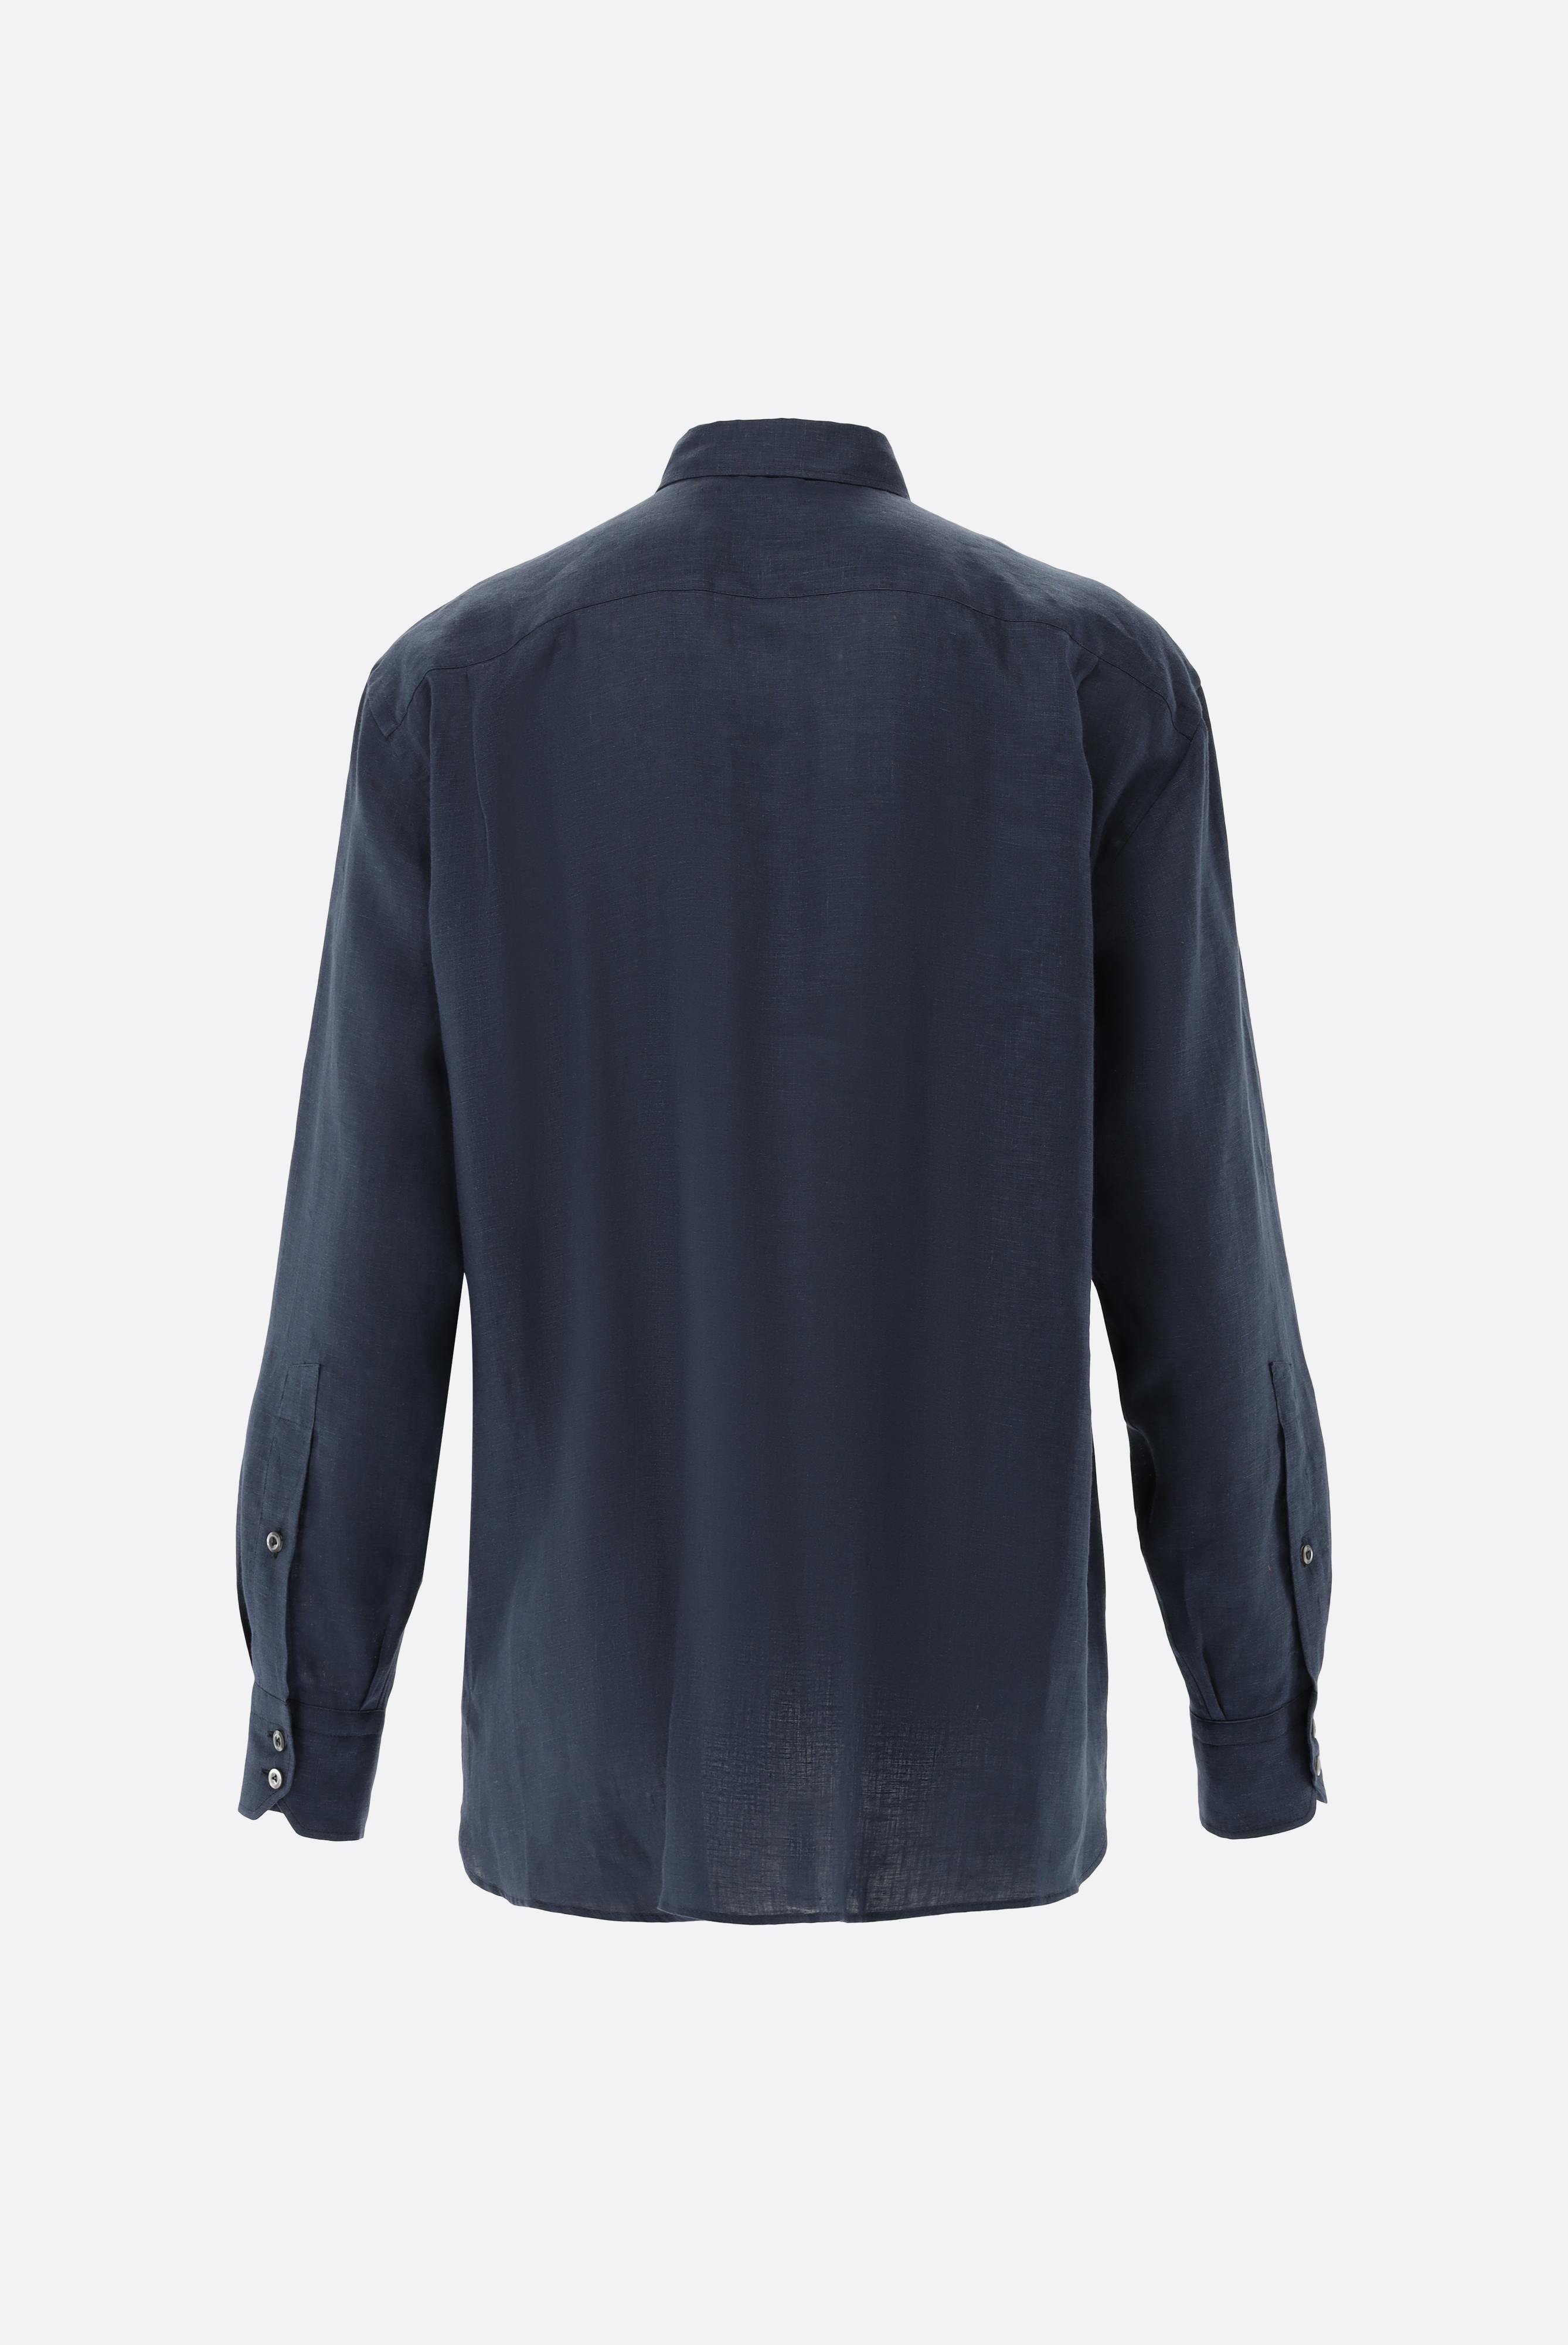 Casual Hemden+Leinenhemd mit Button-Down-Kragen+20.2026.9V.150555.785.42